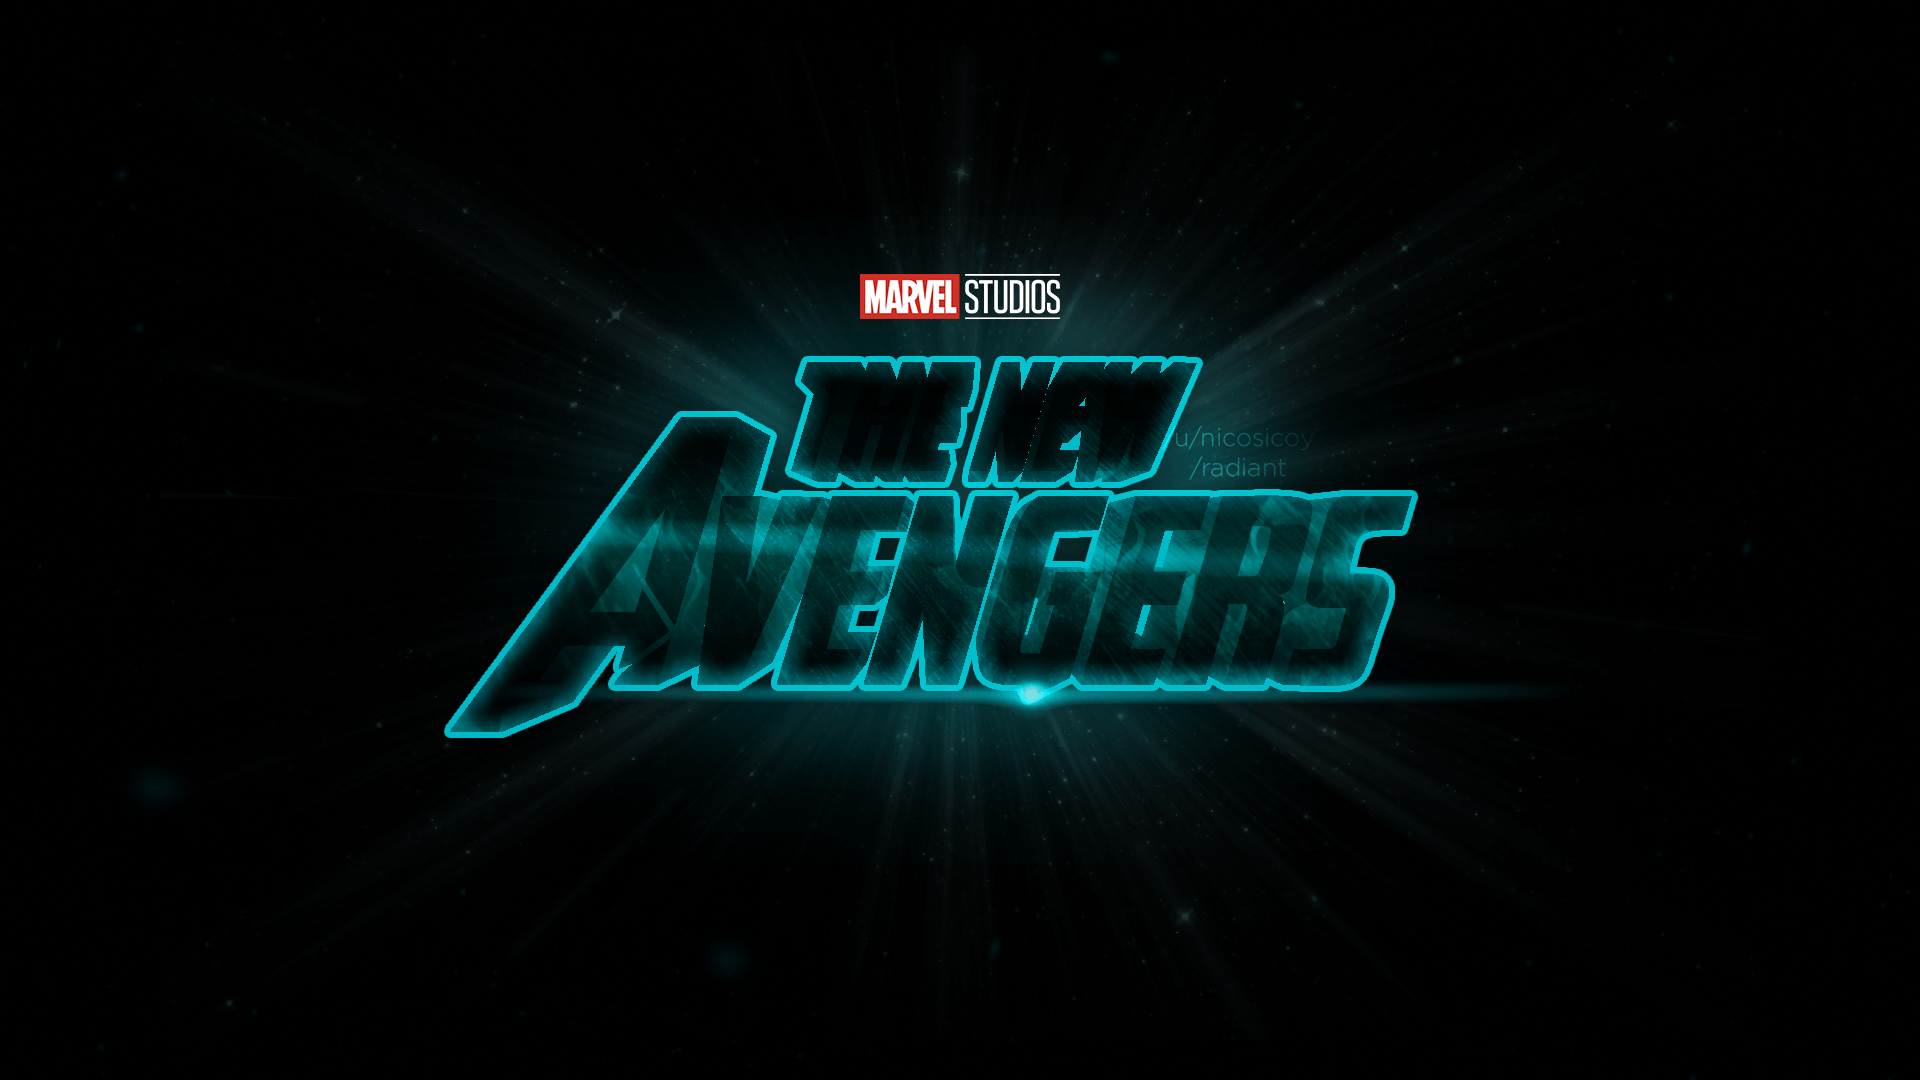 New Avengers Logo - Fanmade) The New Avengers Logo : marvelstudios